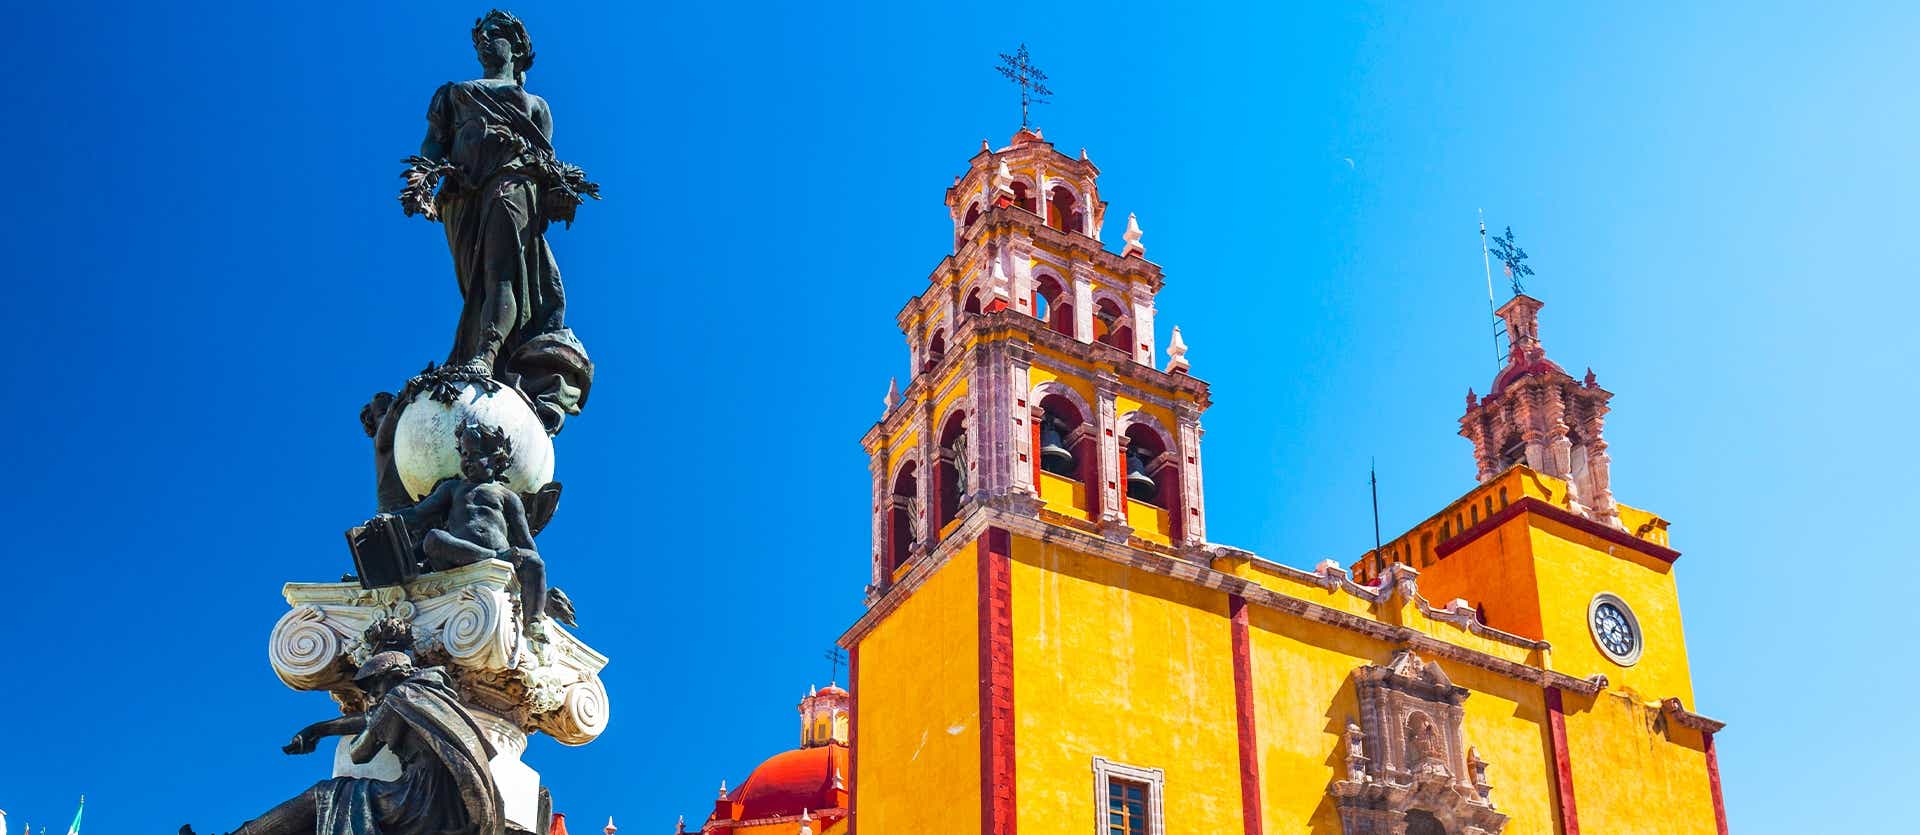 Basílica de Nuestra Señora de Guanajuato <span class="iconos separador"></span> Guanajuato